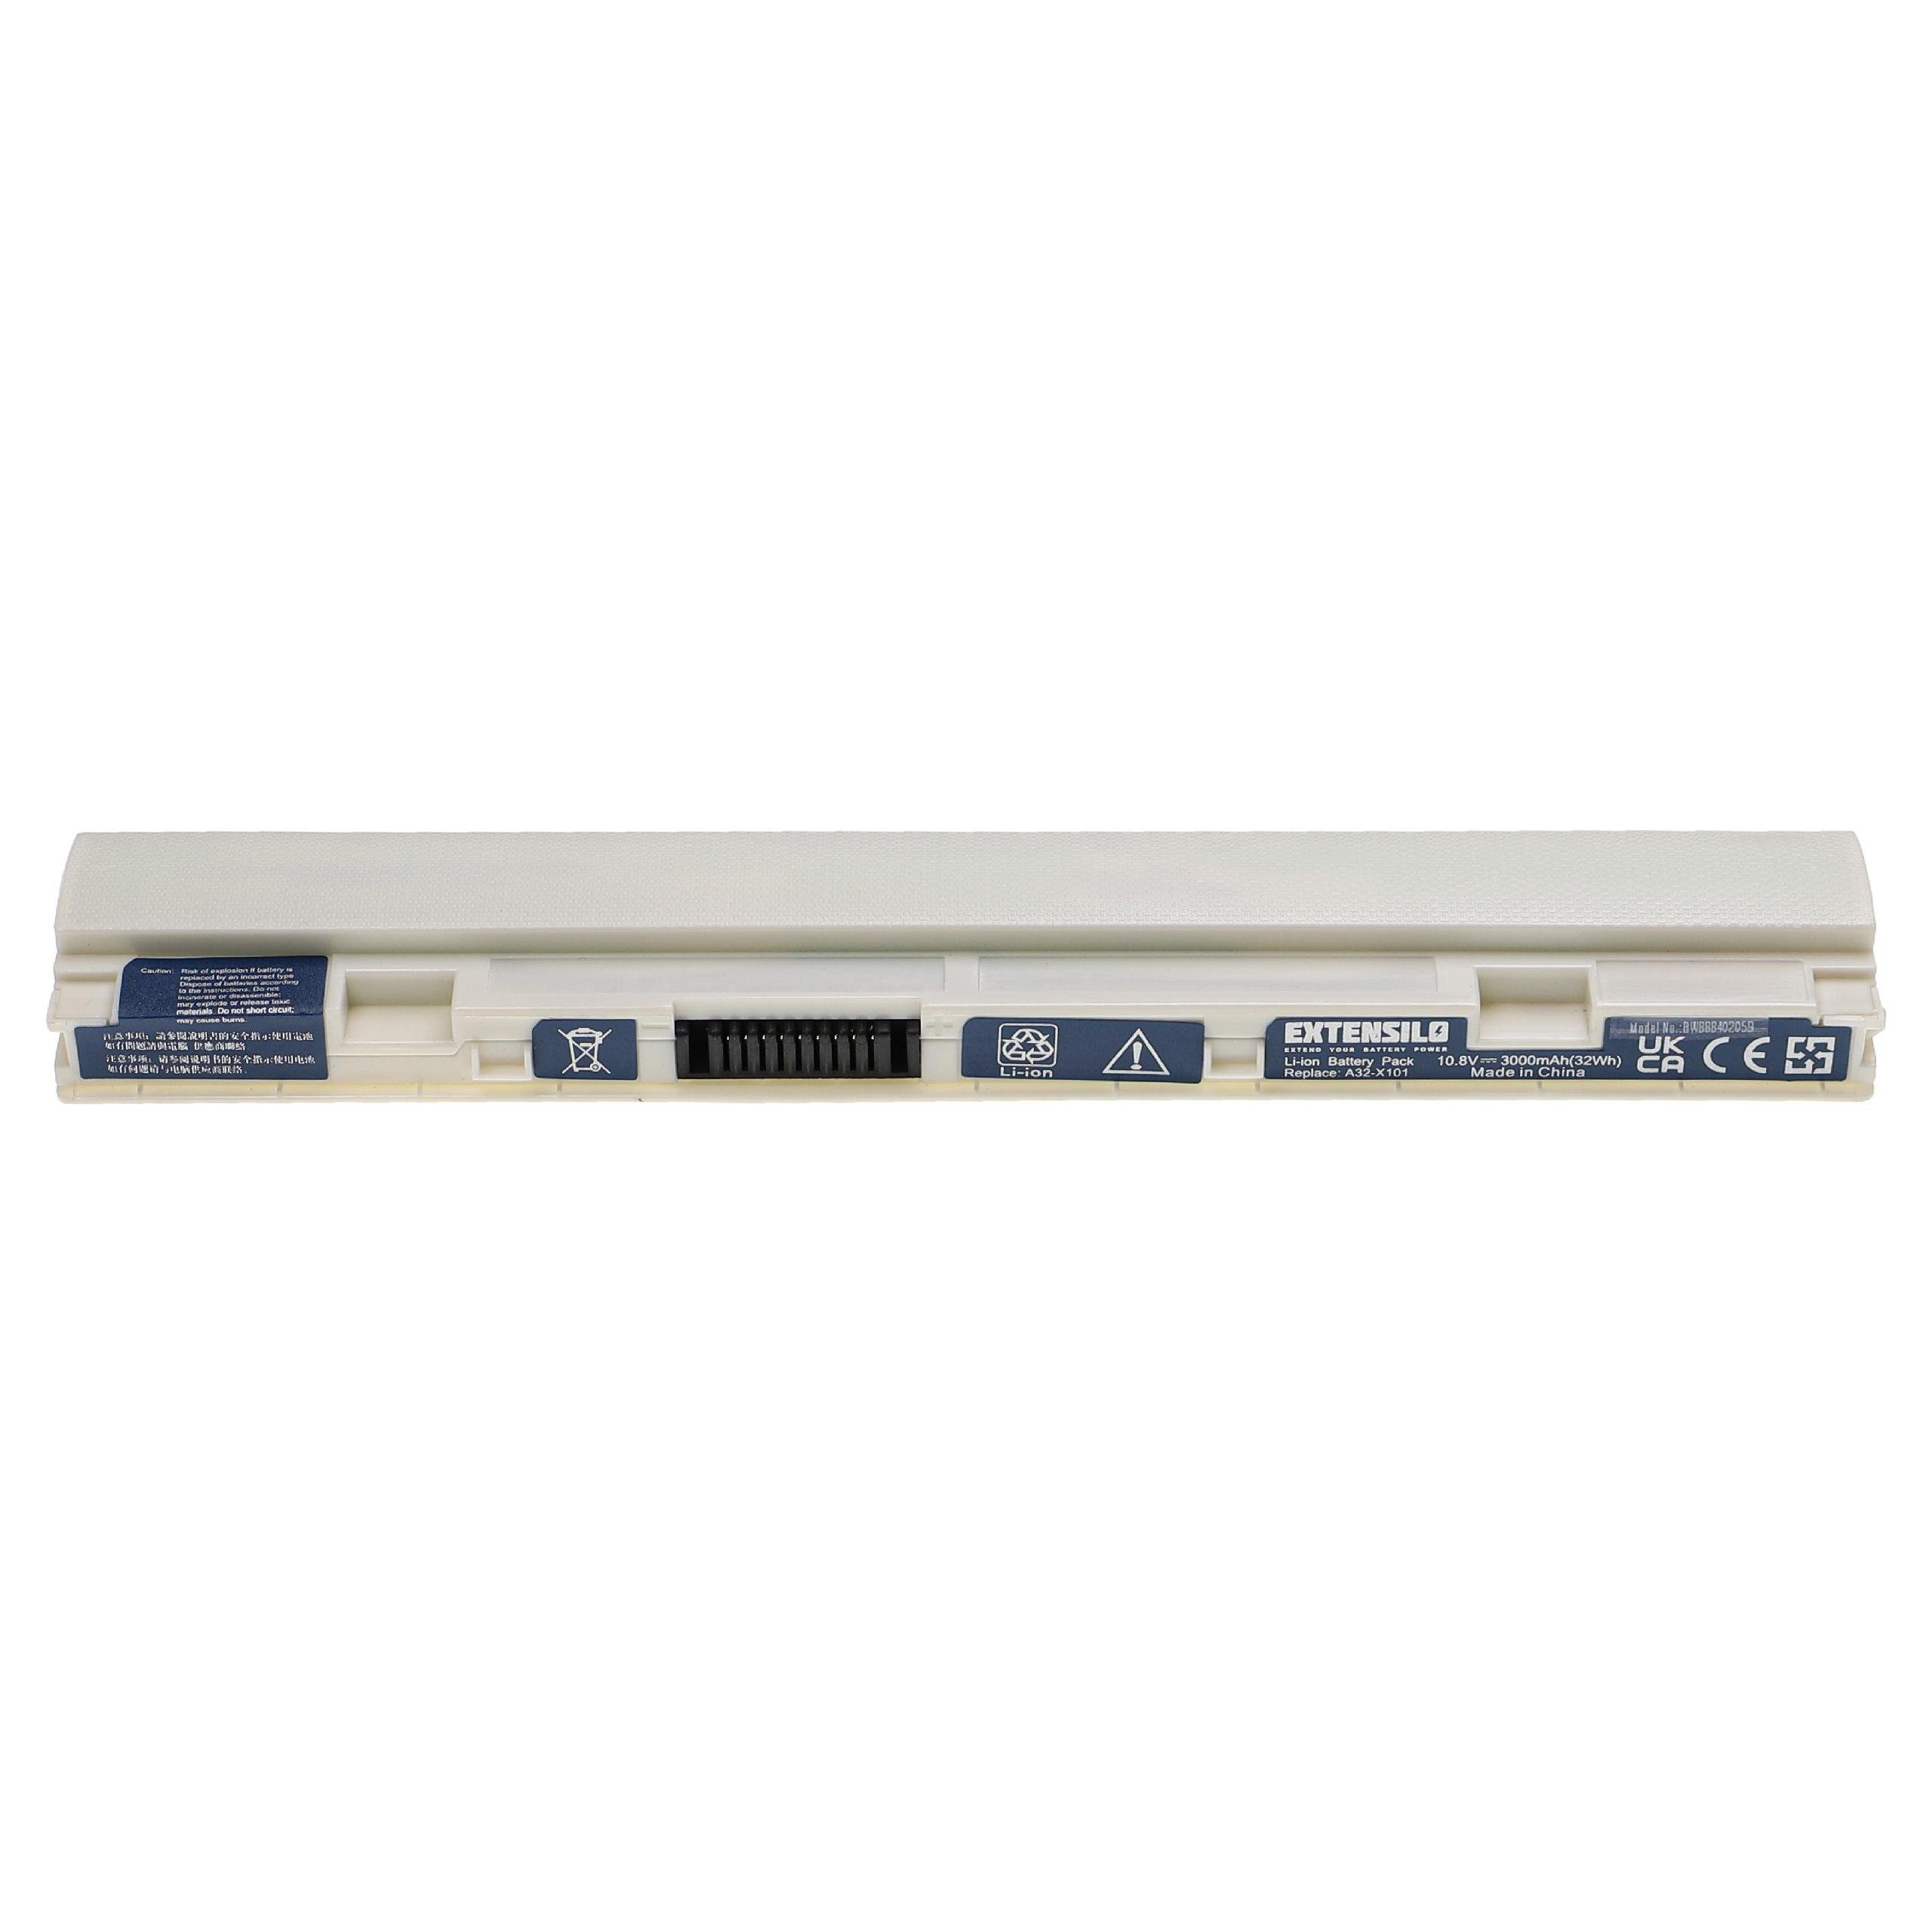 Extensilo kompatibel mit Asus Eee PC X101, X101CH, X101C, R11CX, X101H Laptop-Akku Li-Ion 3000 mAh (10,8 V)